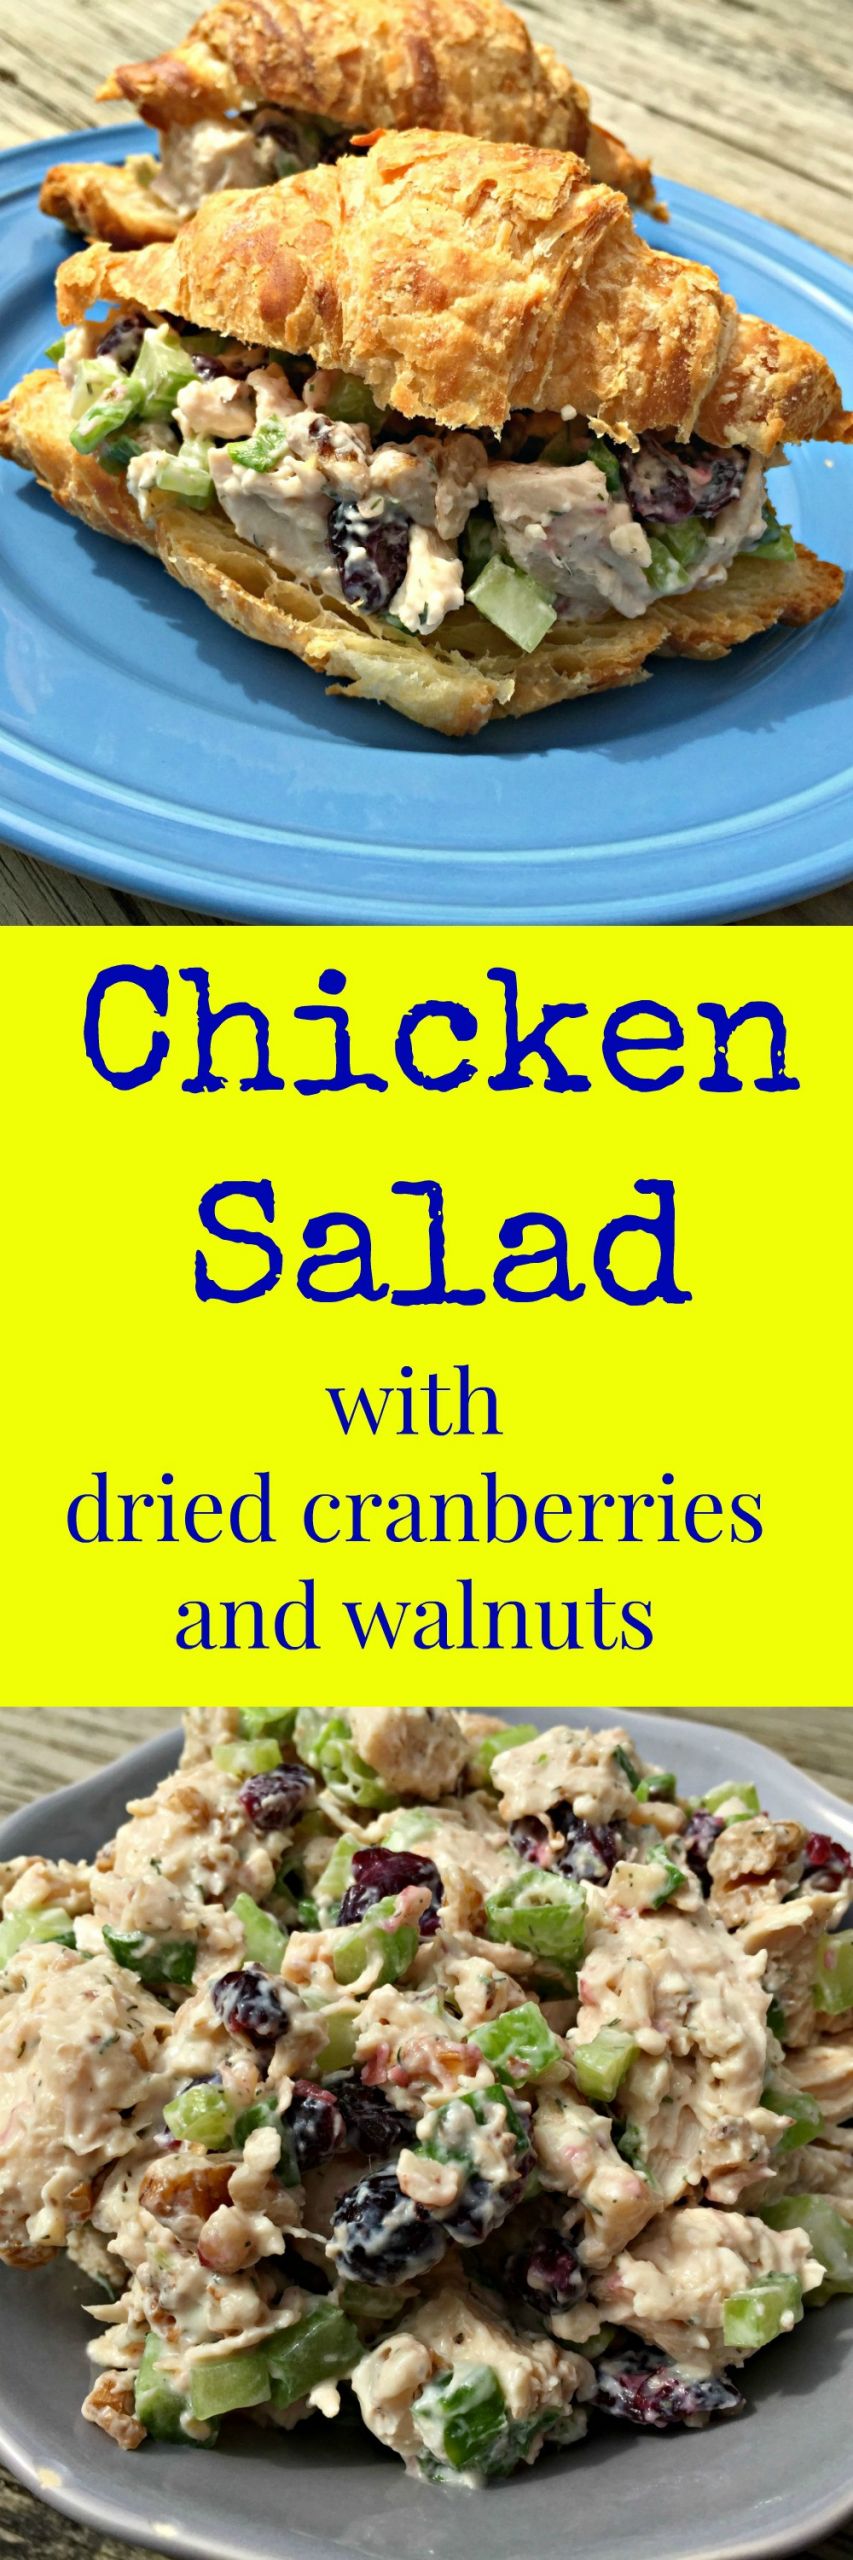 Chicken Salad With Dried Cranberries
 Chicken Salad with Dried Cranberries and Walnuts